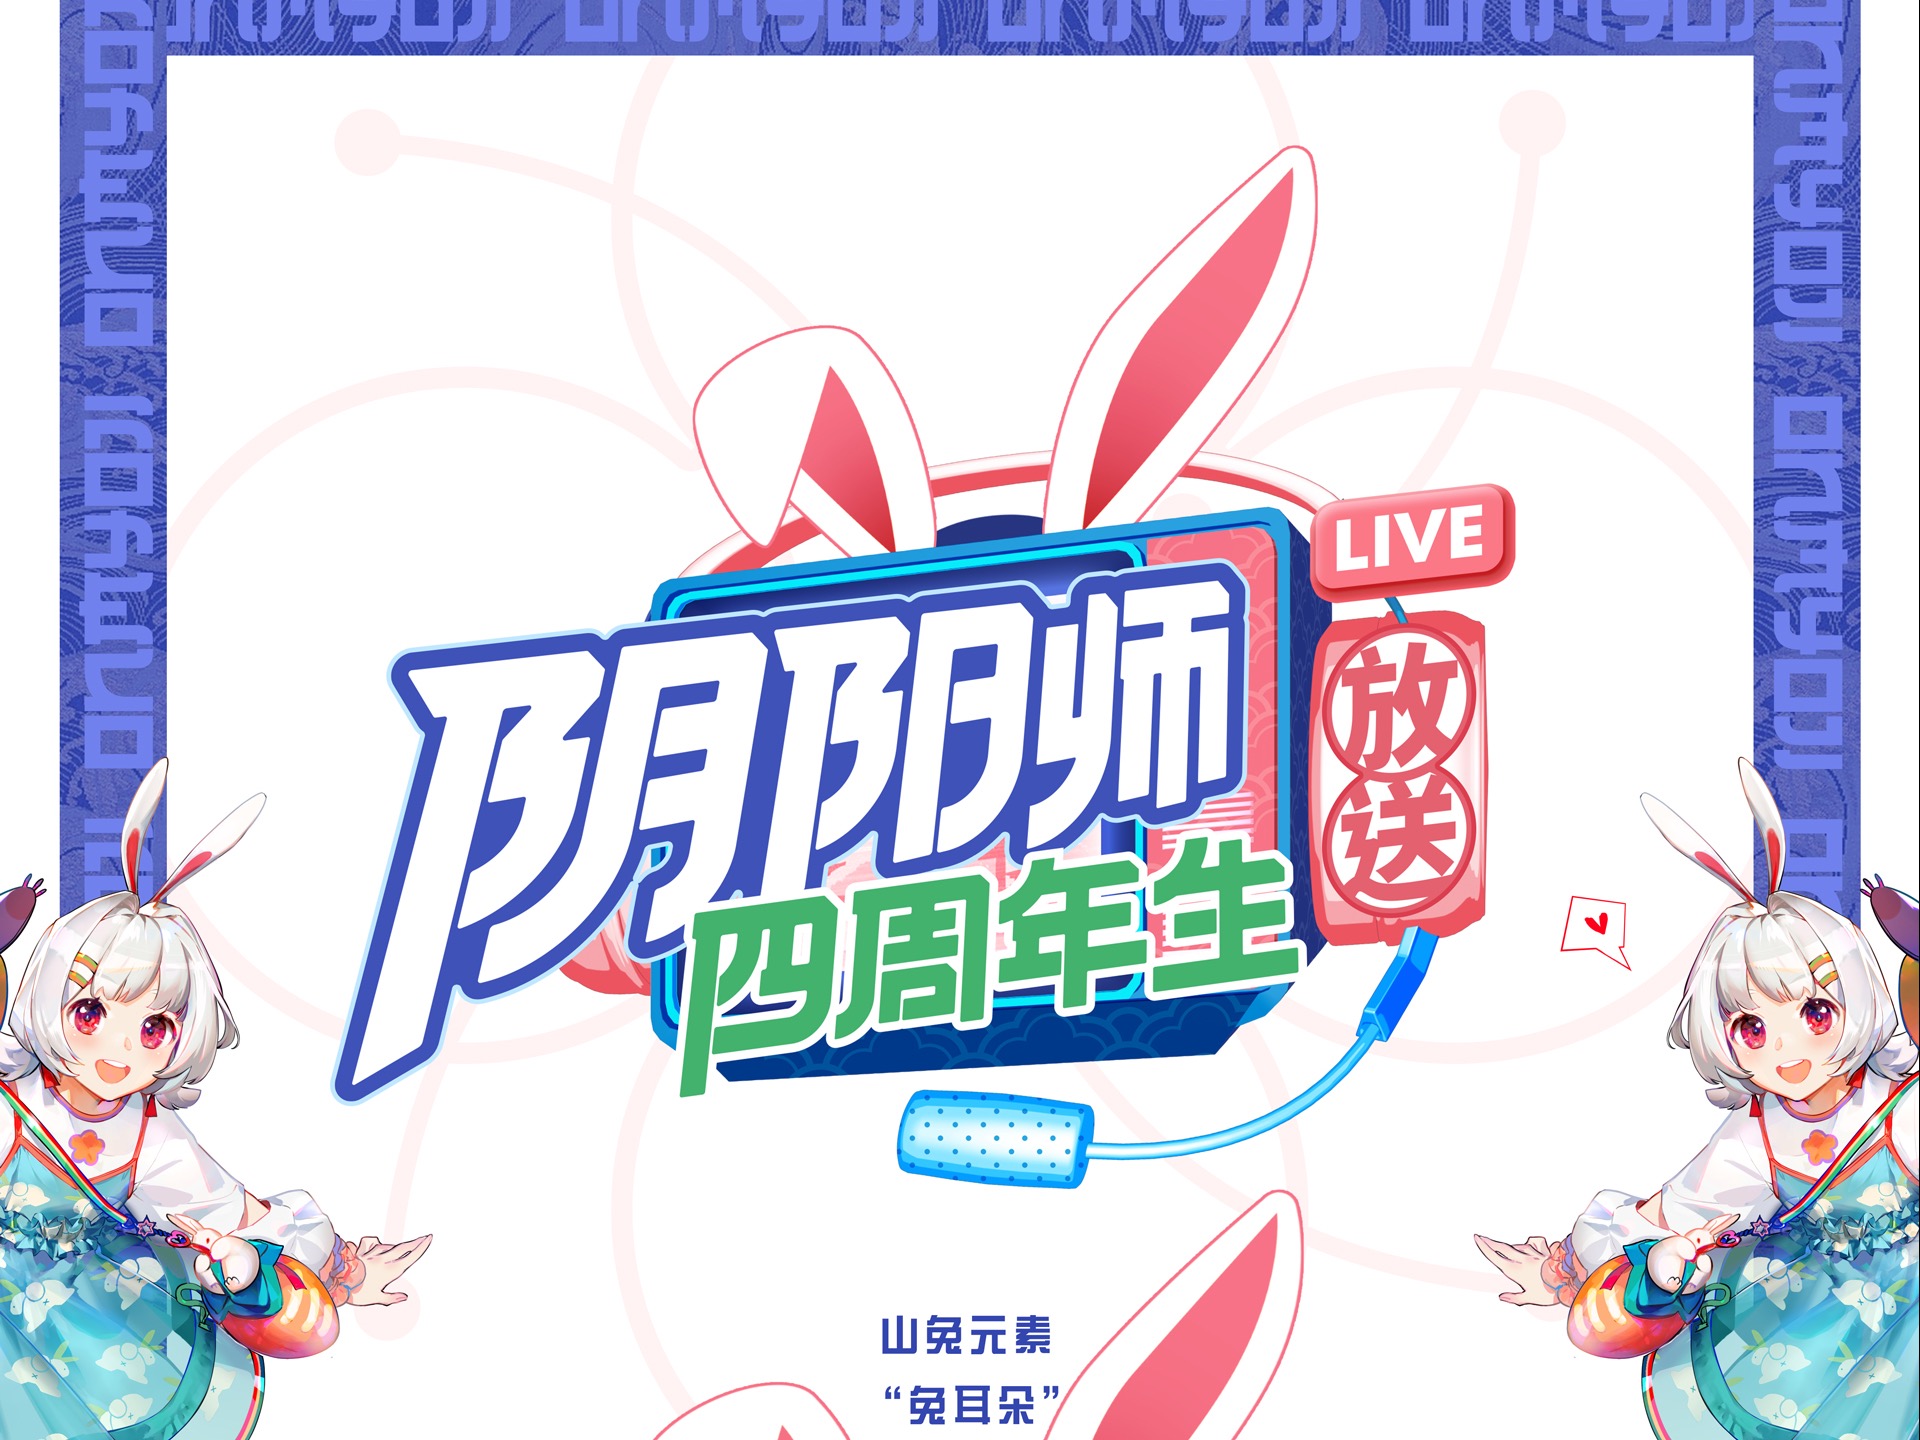 网易游戏《阴阳师四周年生-山兔放送》视觉整包设计